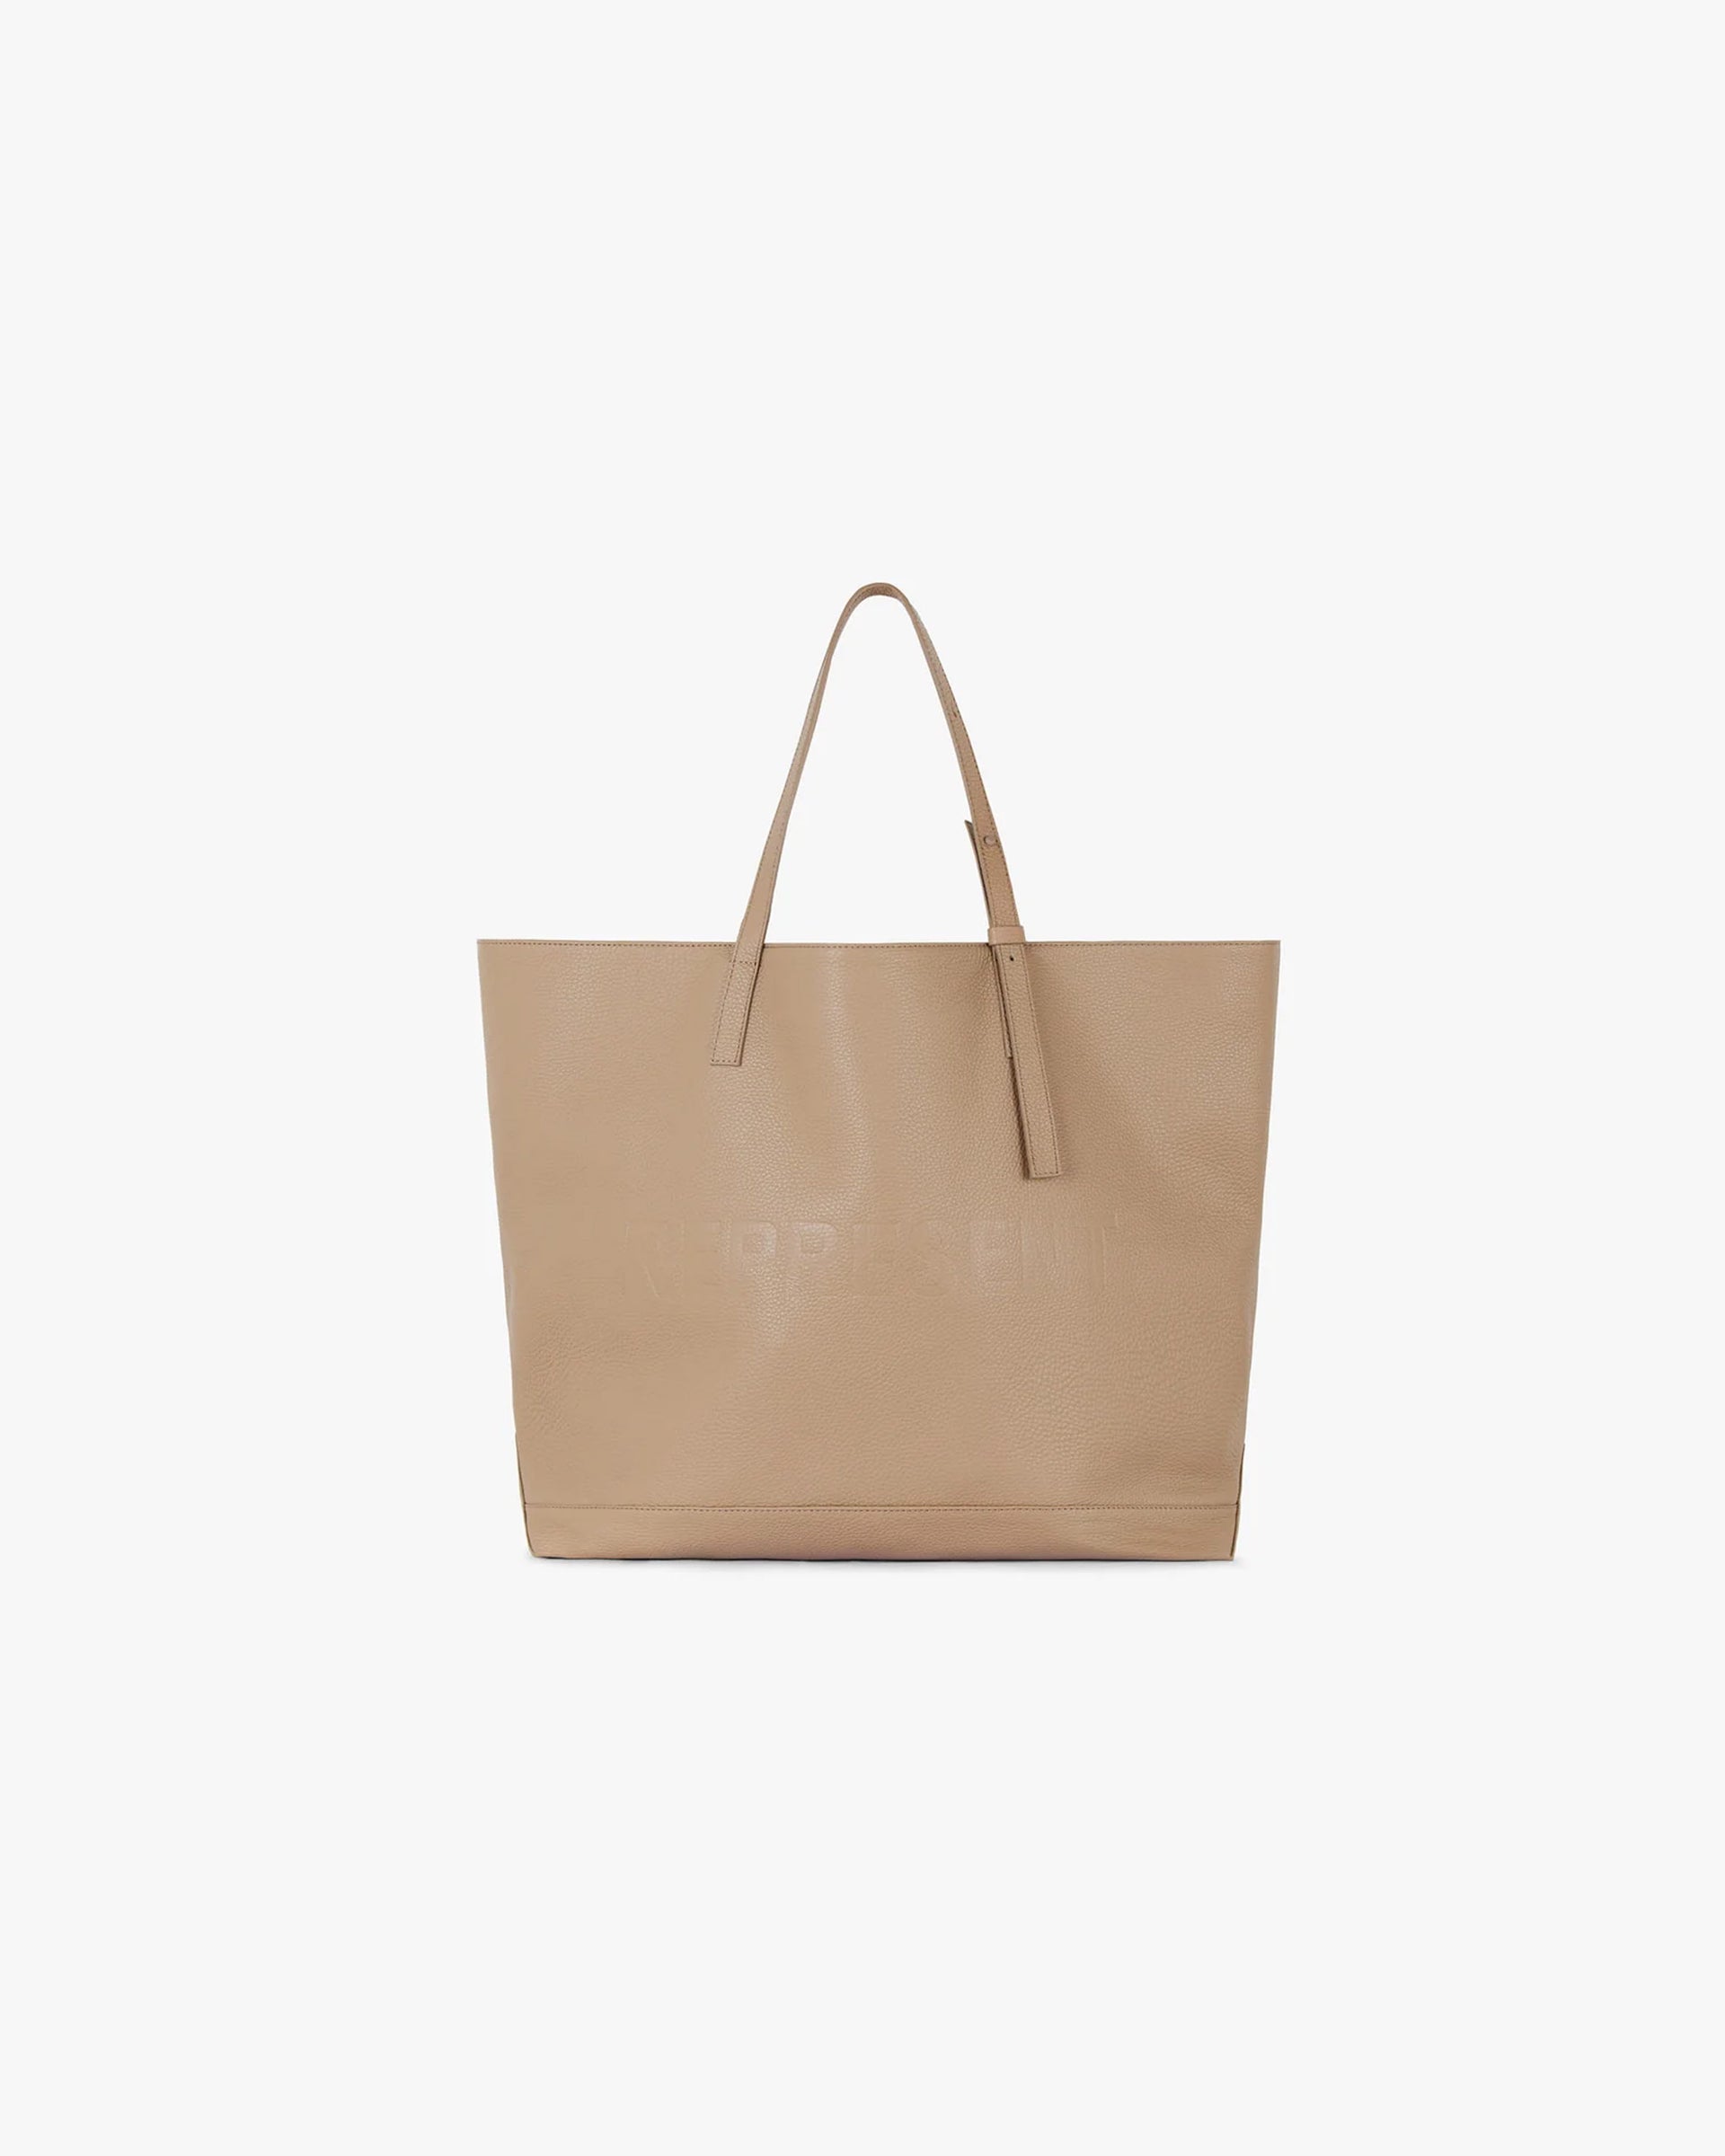 Leather Tote Bag | Sesame Accessories SC23 | Represent Clo